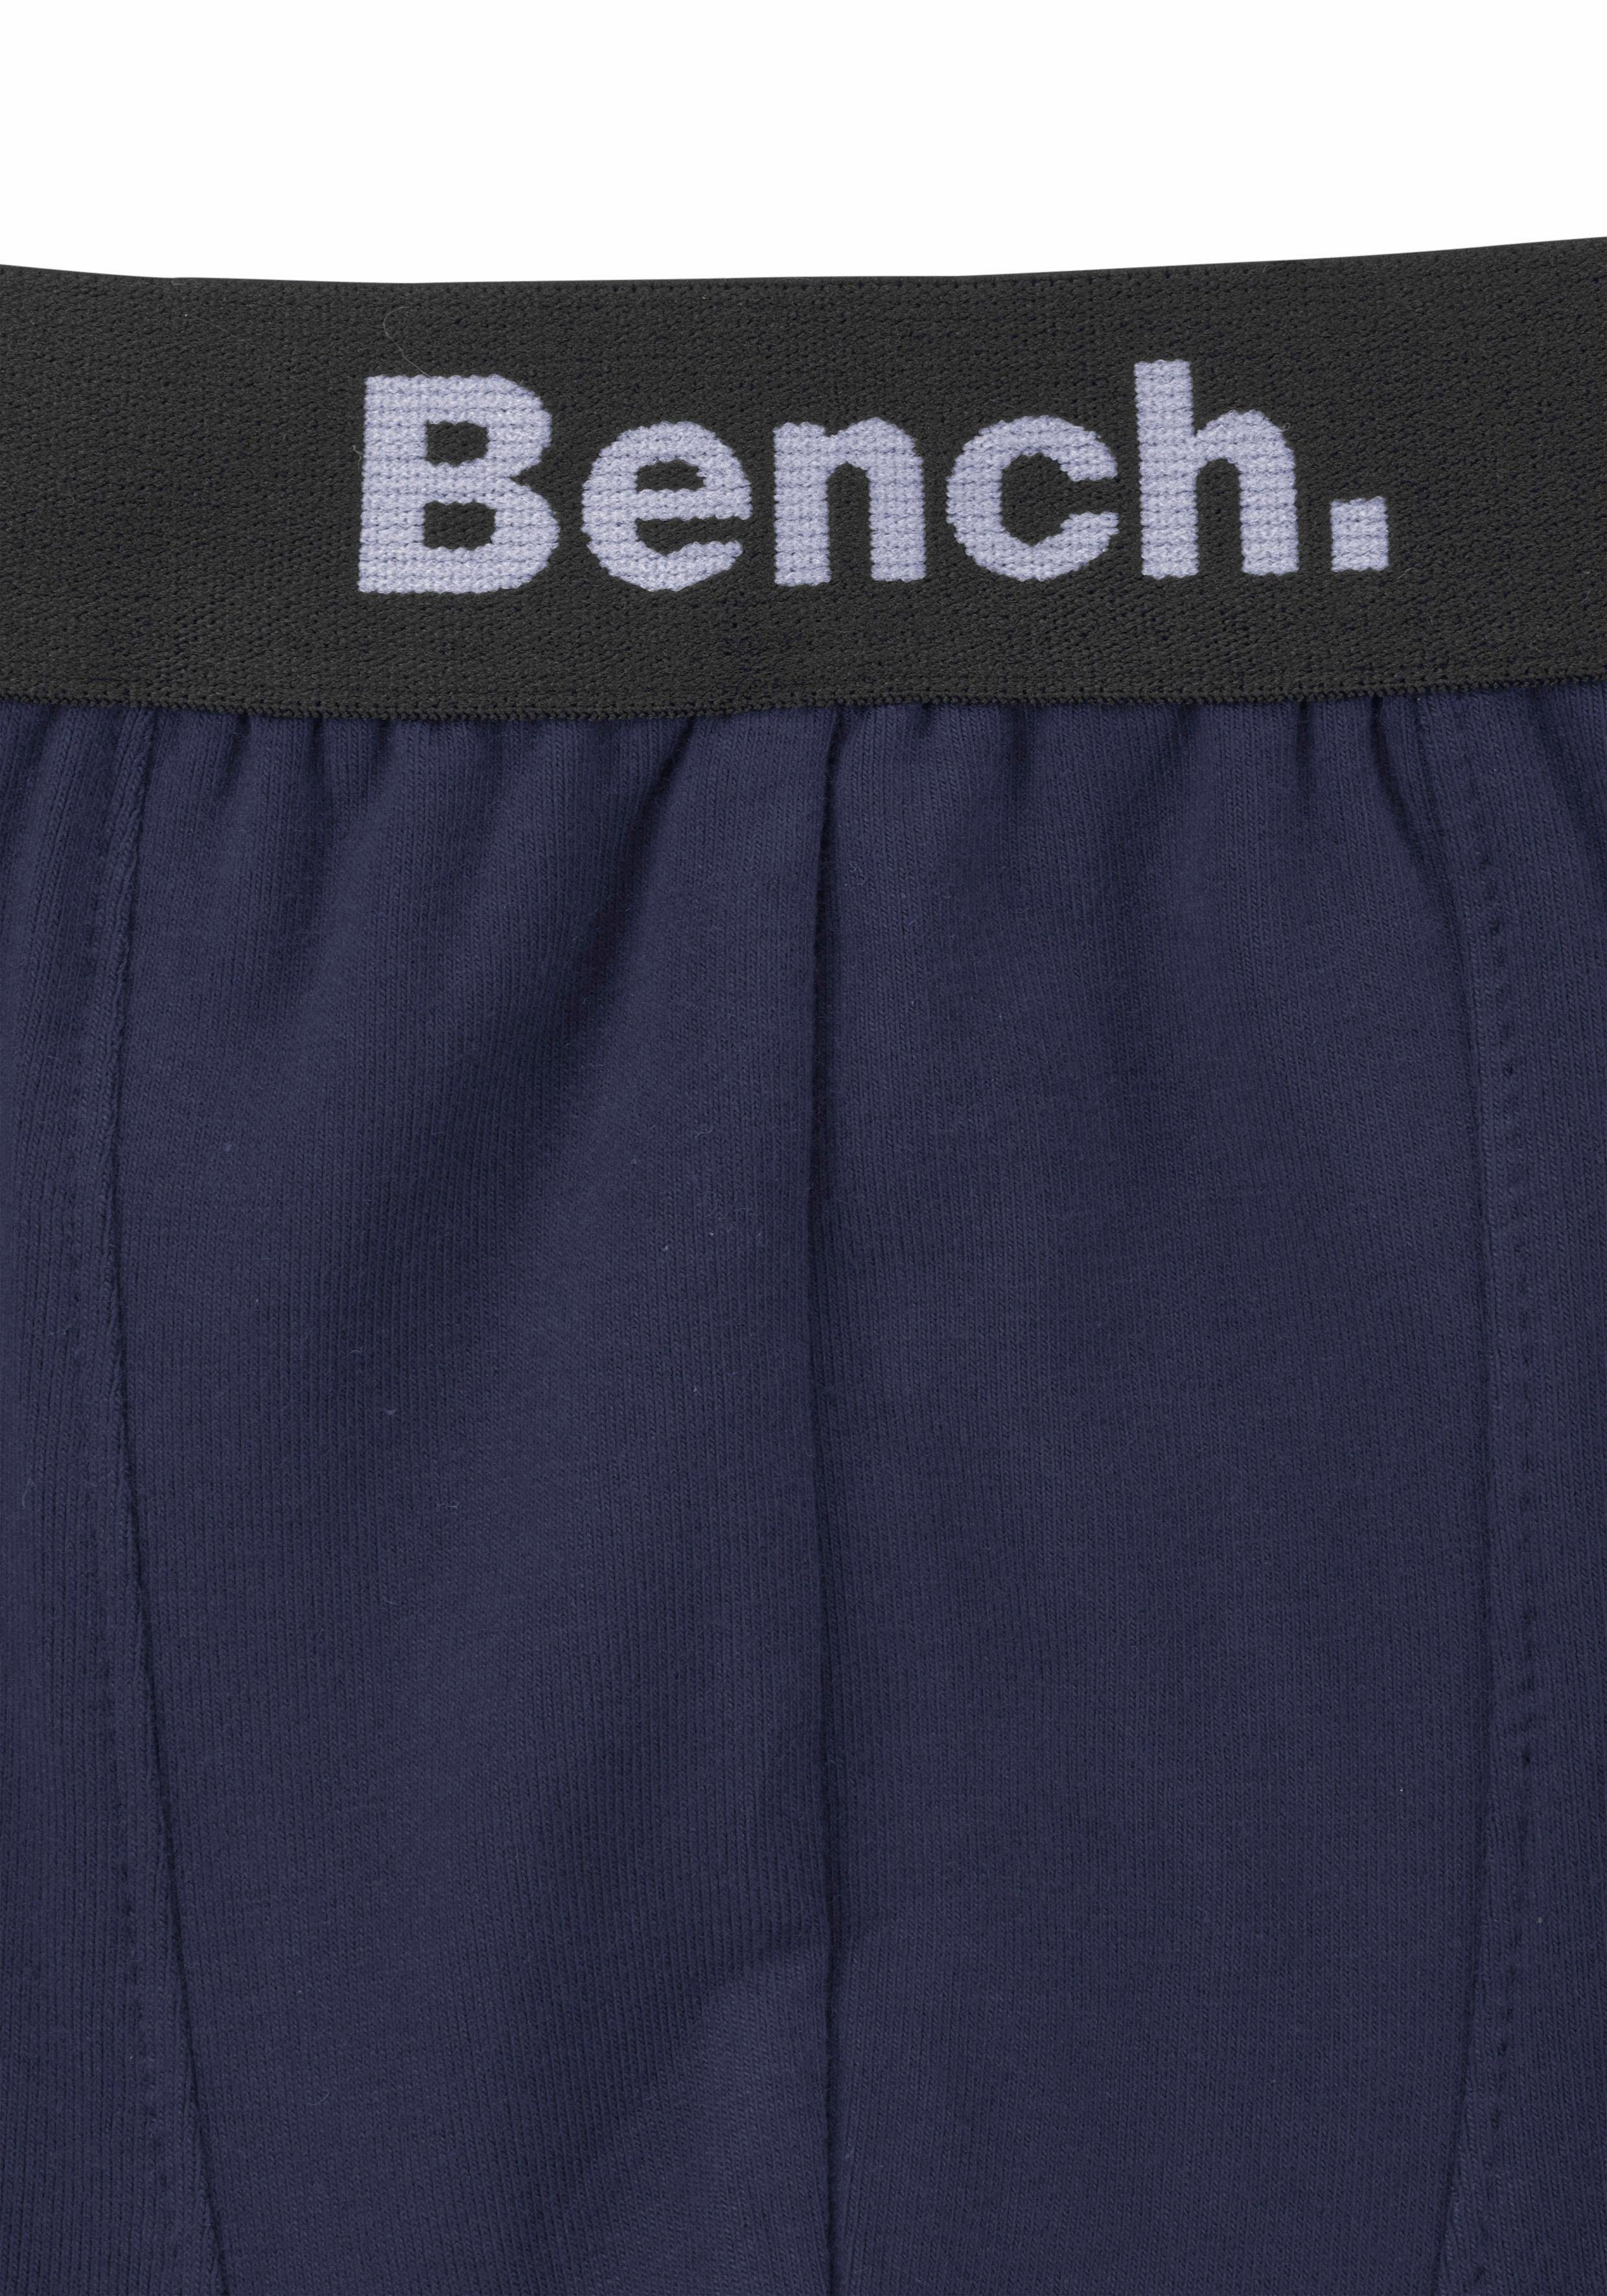 Bench. Boxer (Packung, marine mit Logo-Webbund 3-St)